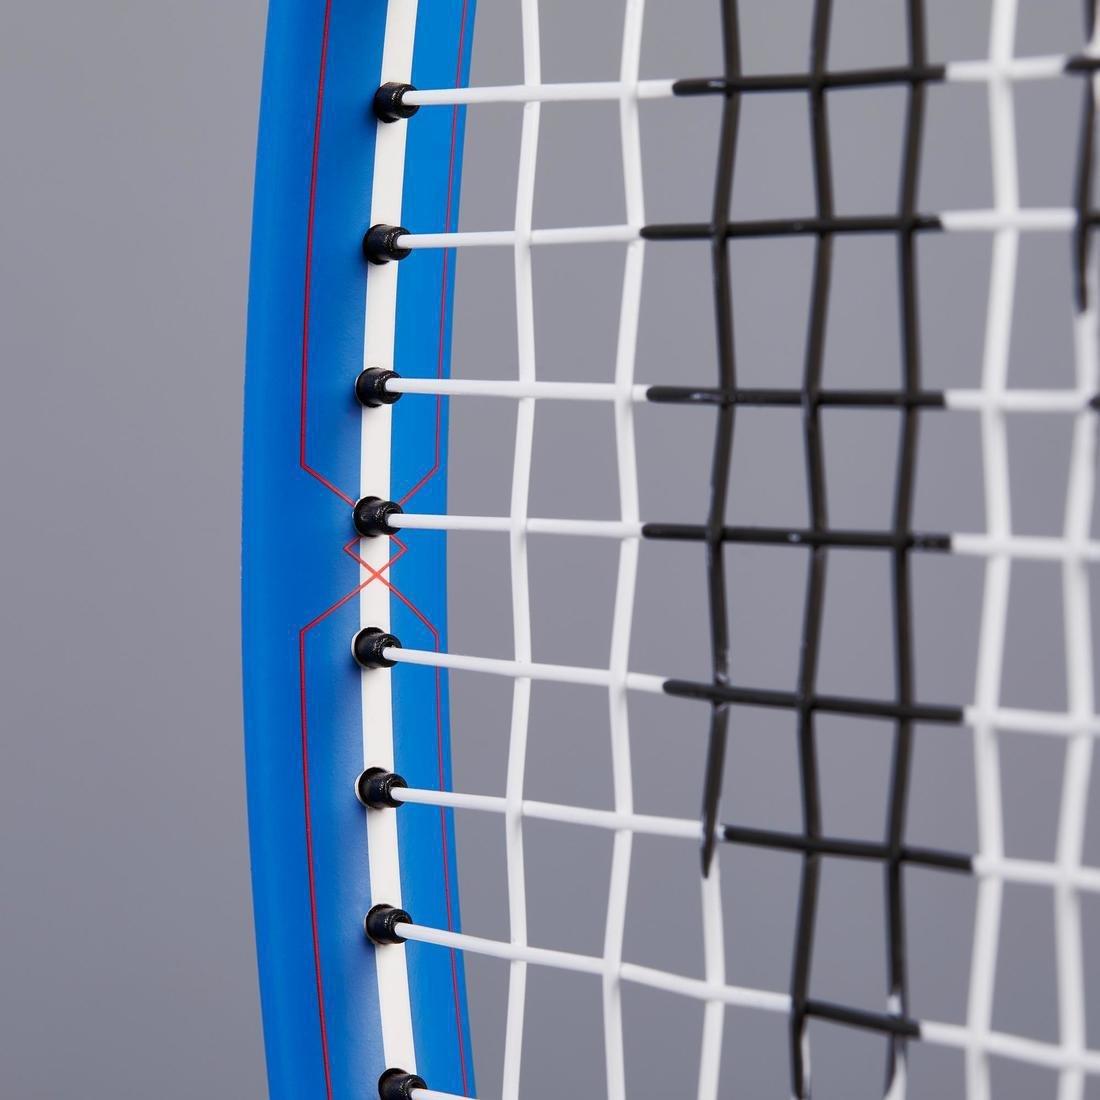 ARTENGO - Tr530 Kids Tennis Racket - Yellow